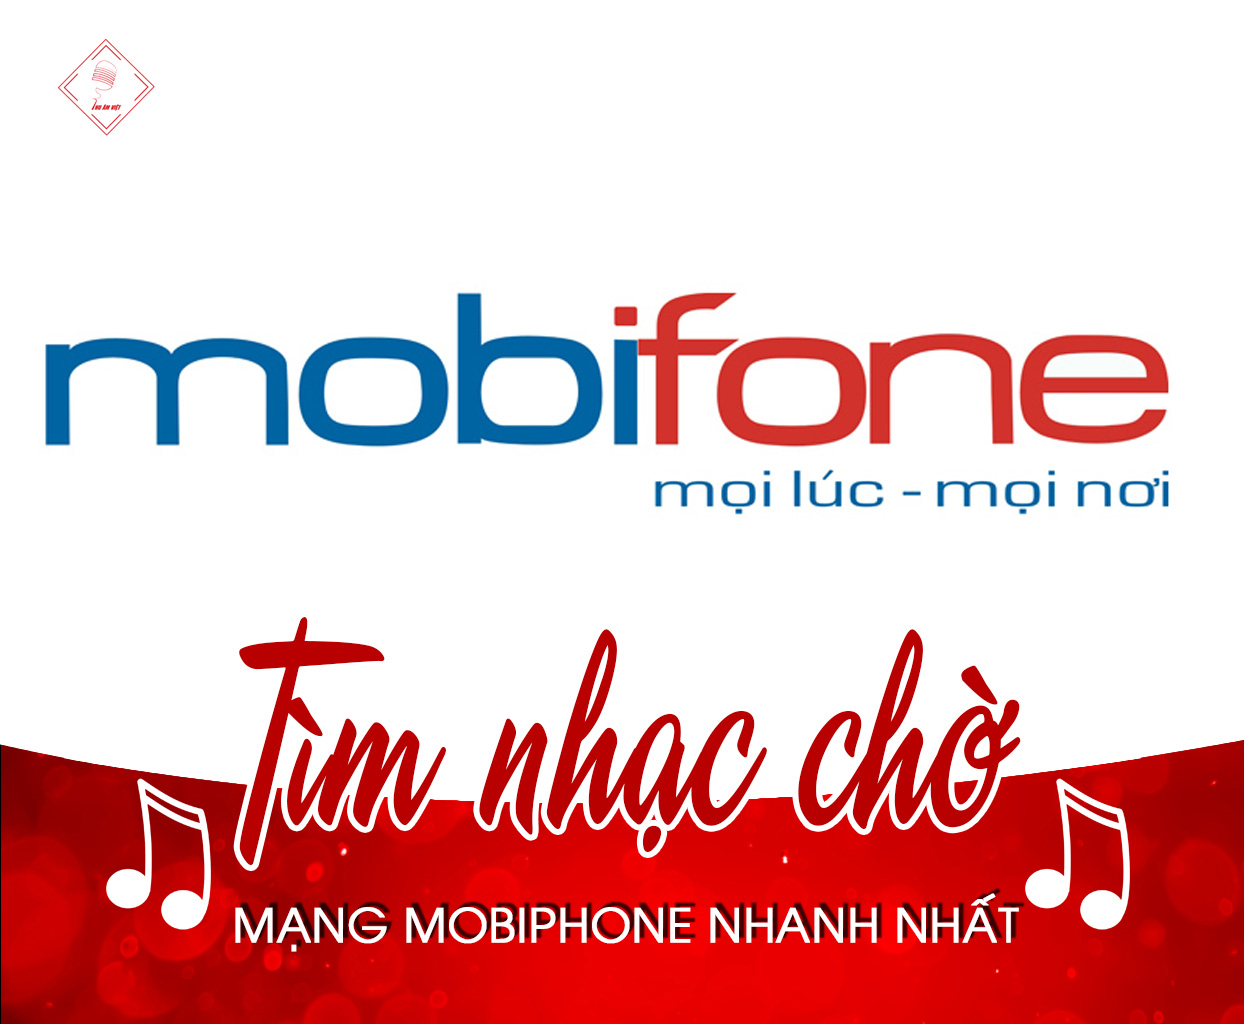 Hướng dẫn tìm mã số bài hát nhạc chờ mạng MobiFone nhanh nhất 2021